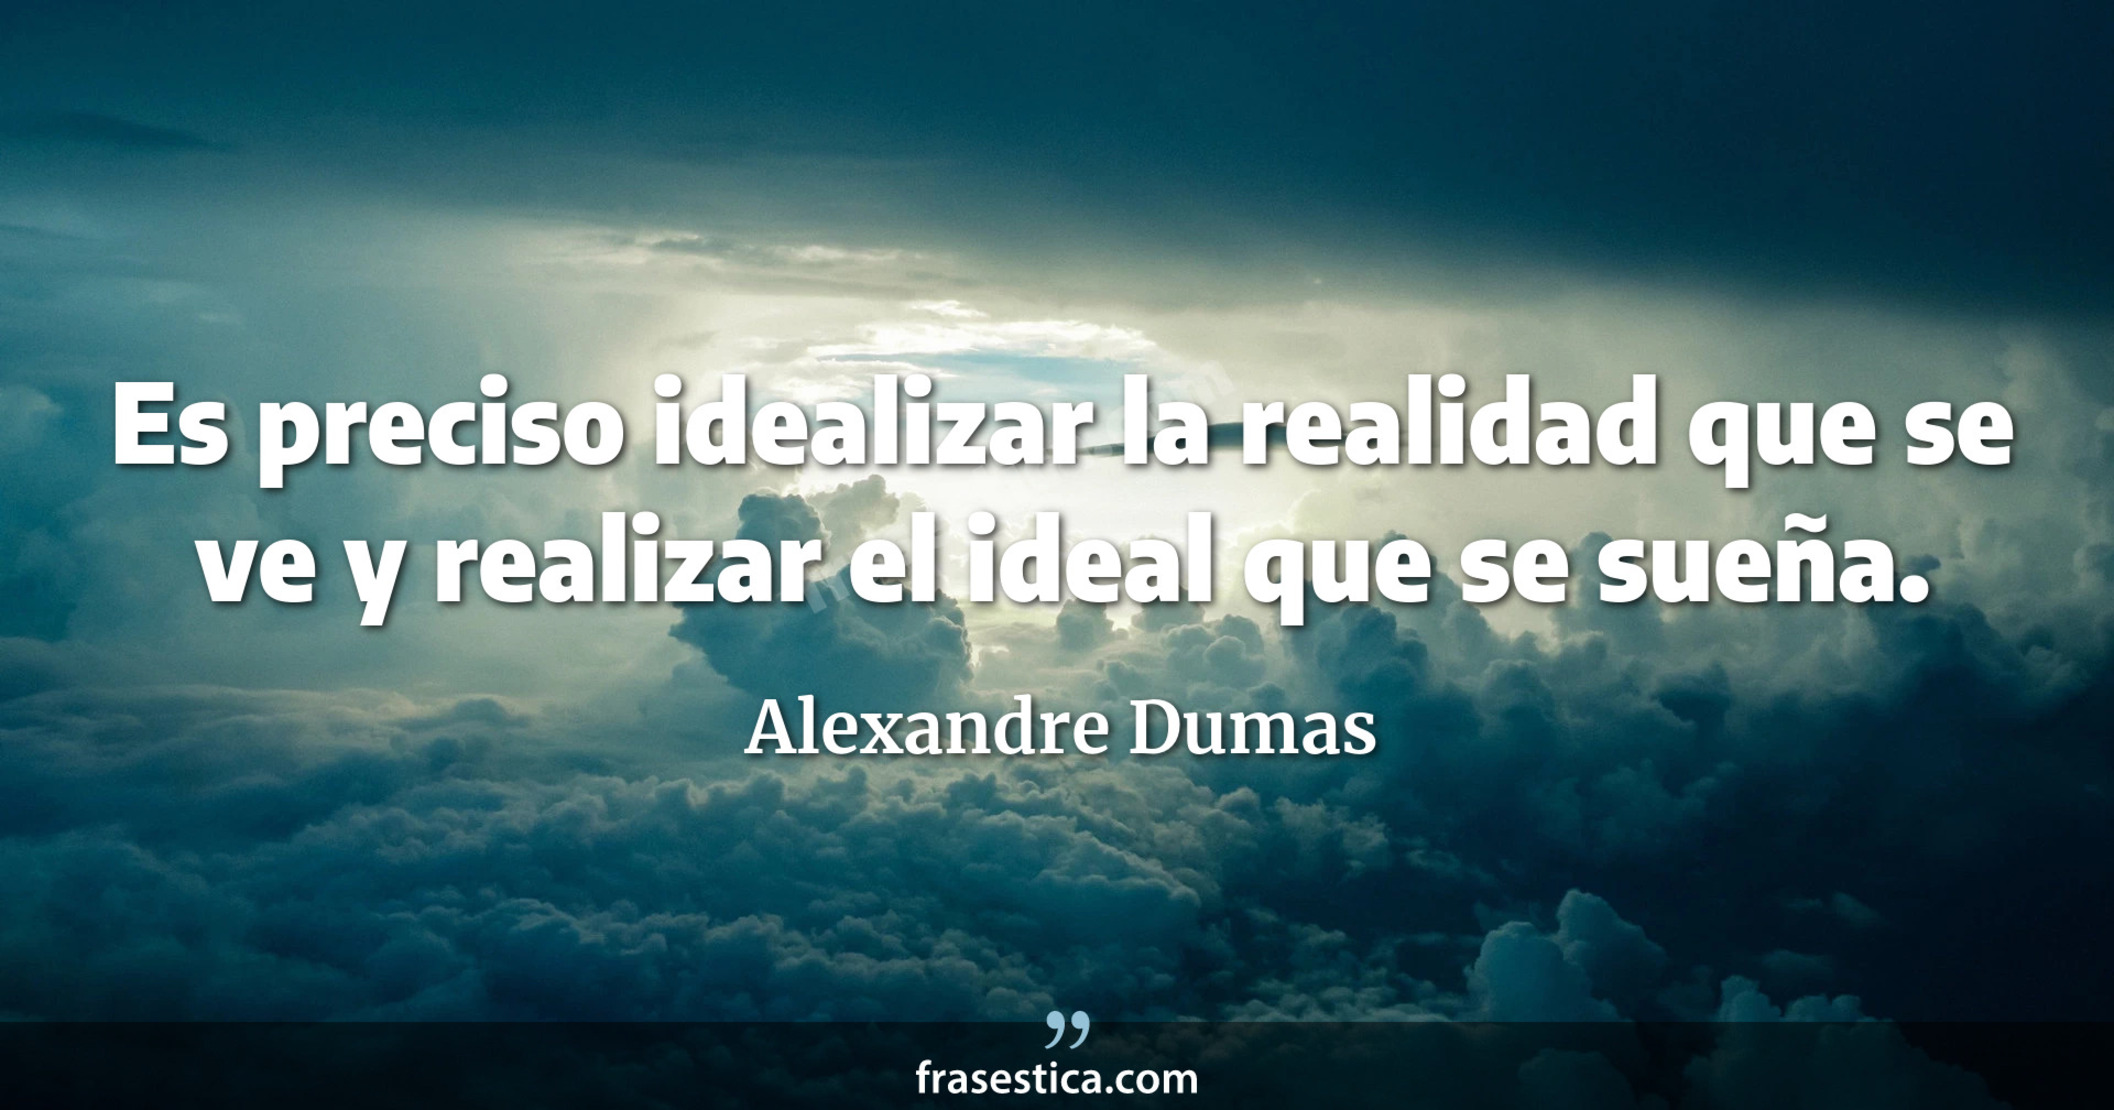 Es preciso idealizar la realidad que se ve y realizar el ideal que se sueña. - Alexandre Dumas